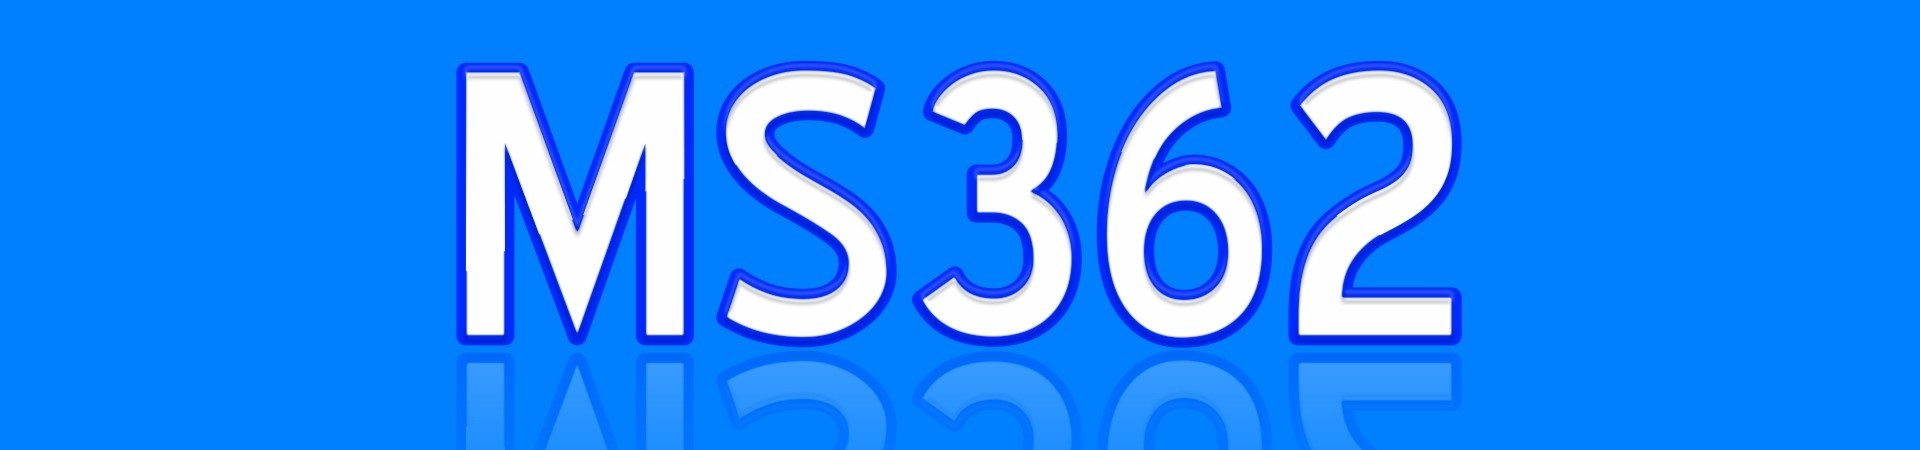 MS362